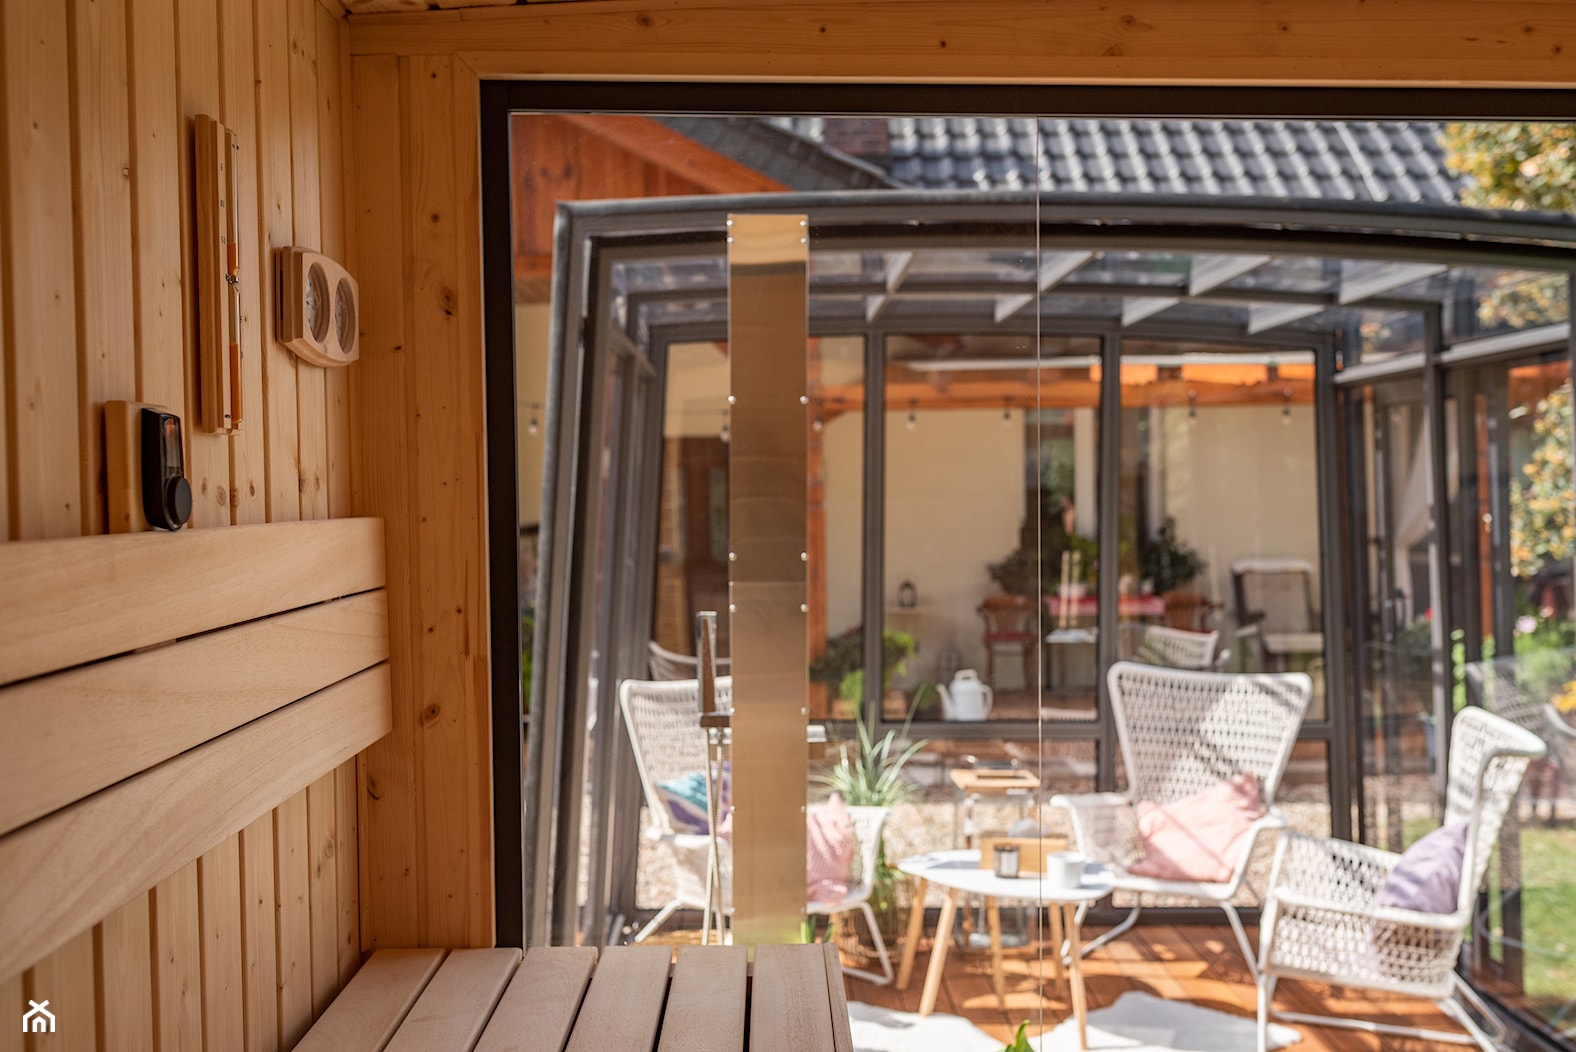 Outdoor Concept - sauna i zadaszenie - zdjęcie od Bucovers - Homebook